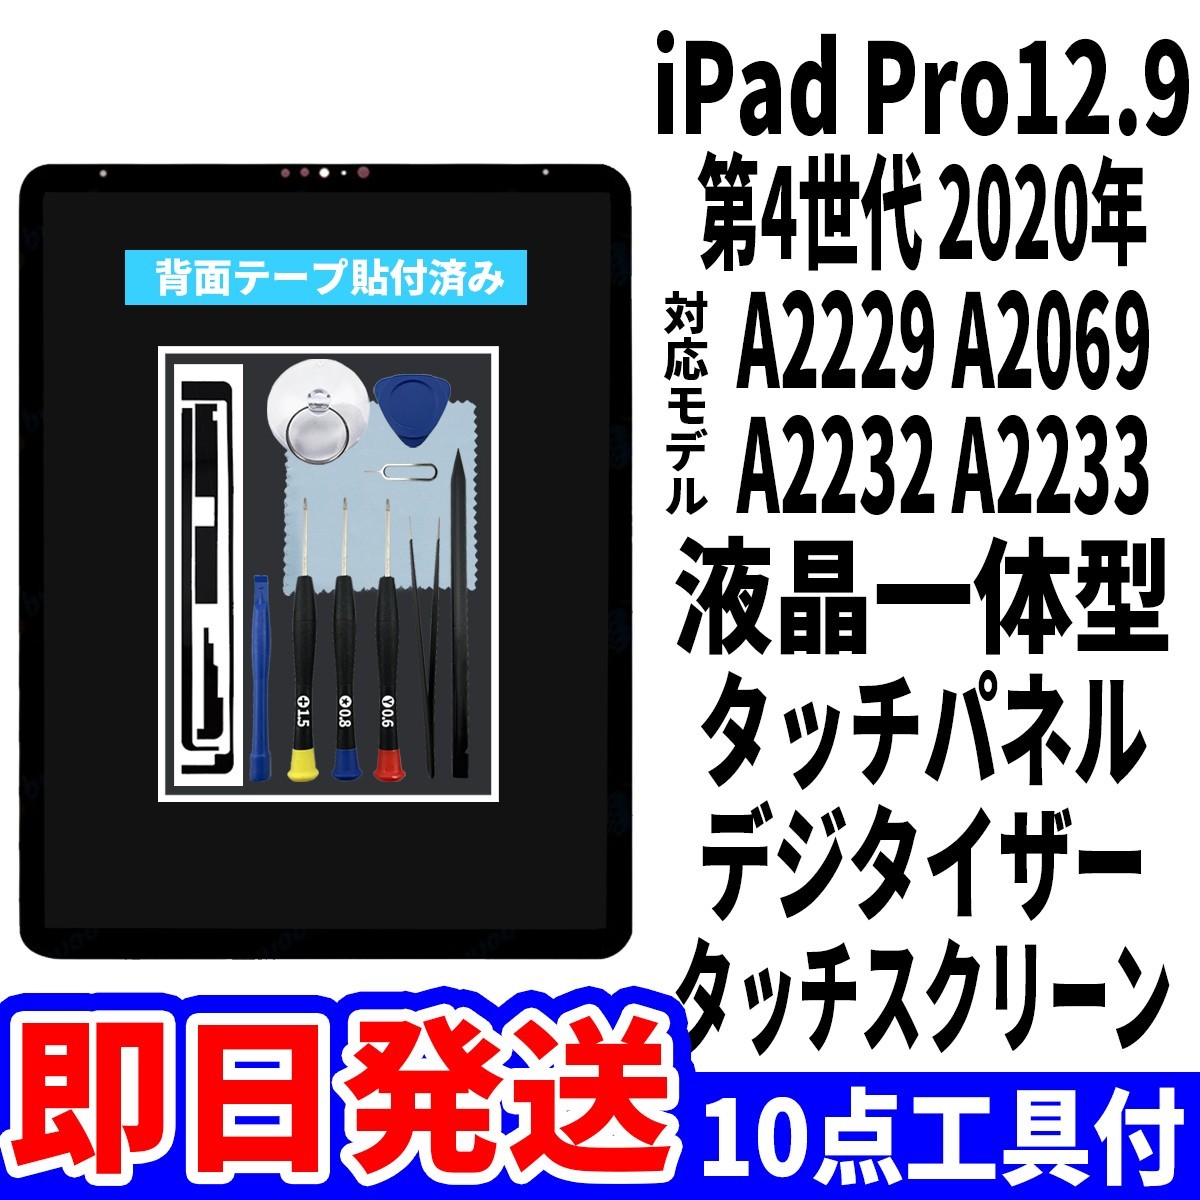 即日発送! iPad Pro12.9 第4世代 液晶 一体型 A2229 A2069 A2232 A2233 フロントパネル タッチスクリーン交換 デジタイザ修理 画面 工具付_画像1